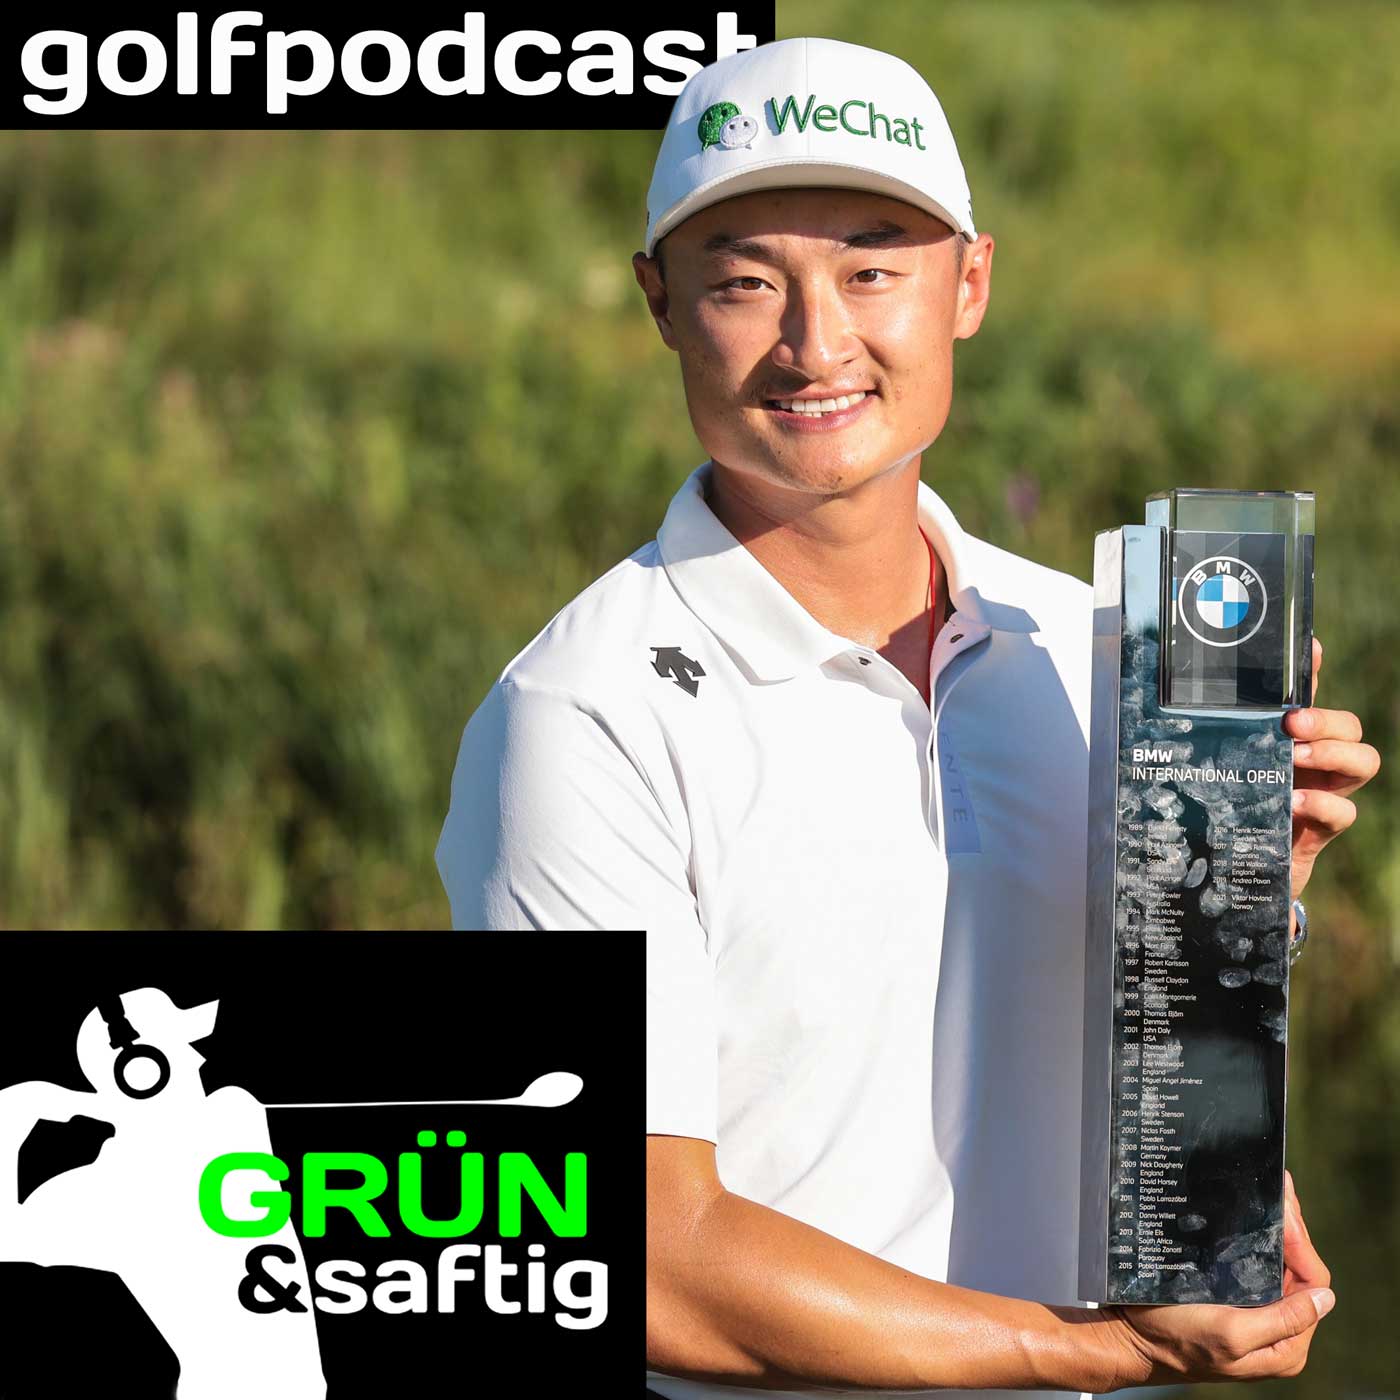 Grün & saftig Golfpodcast